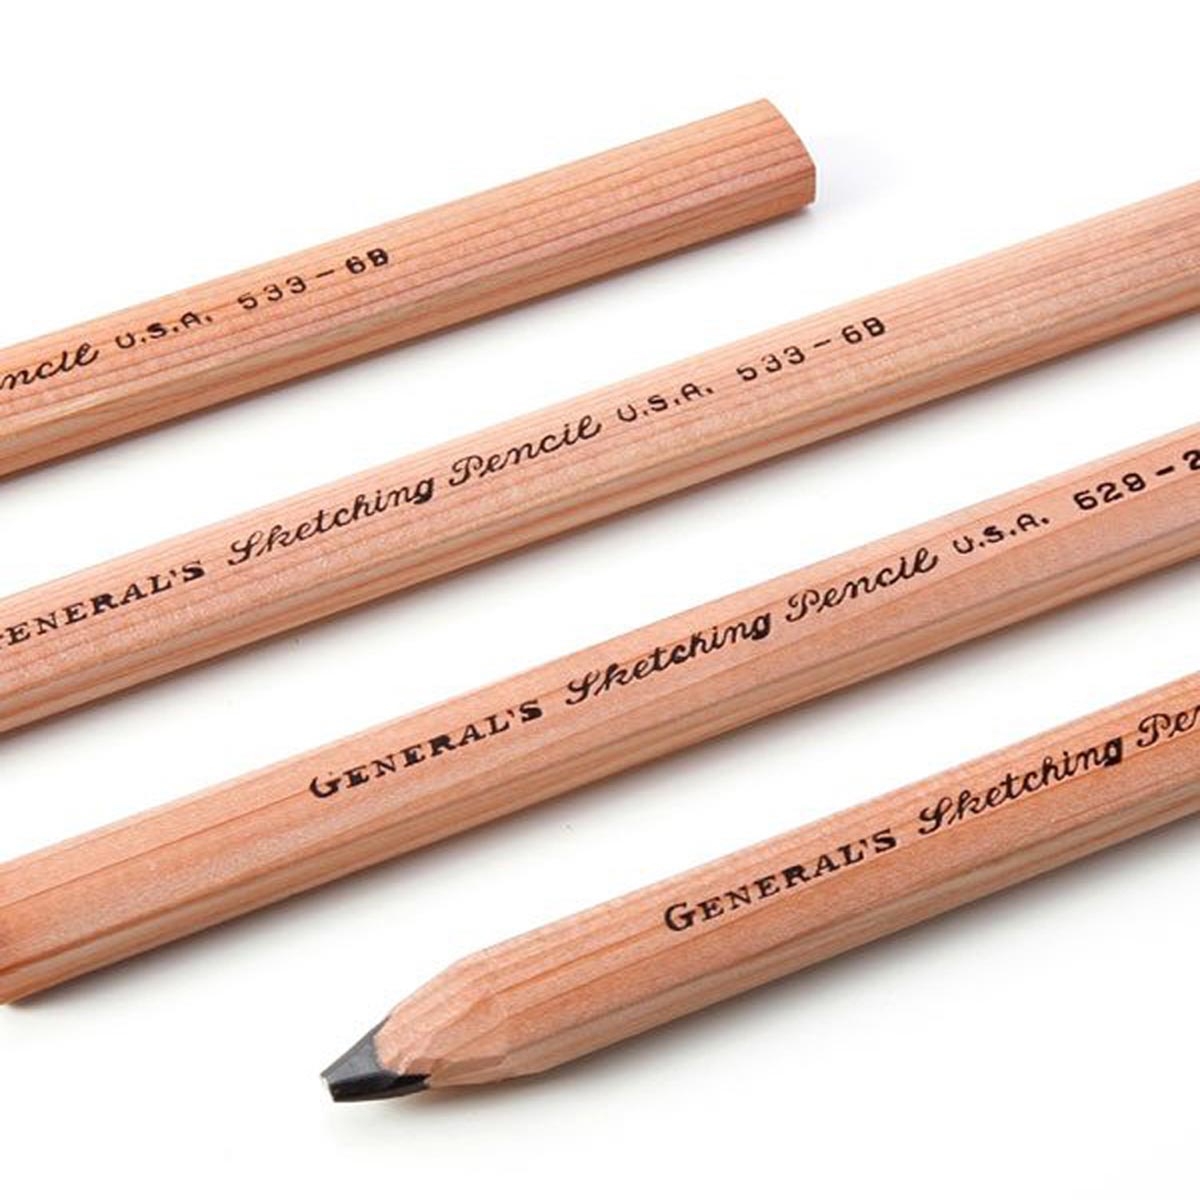 General's Sketching Flat Pencils Open Stock